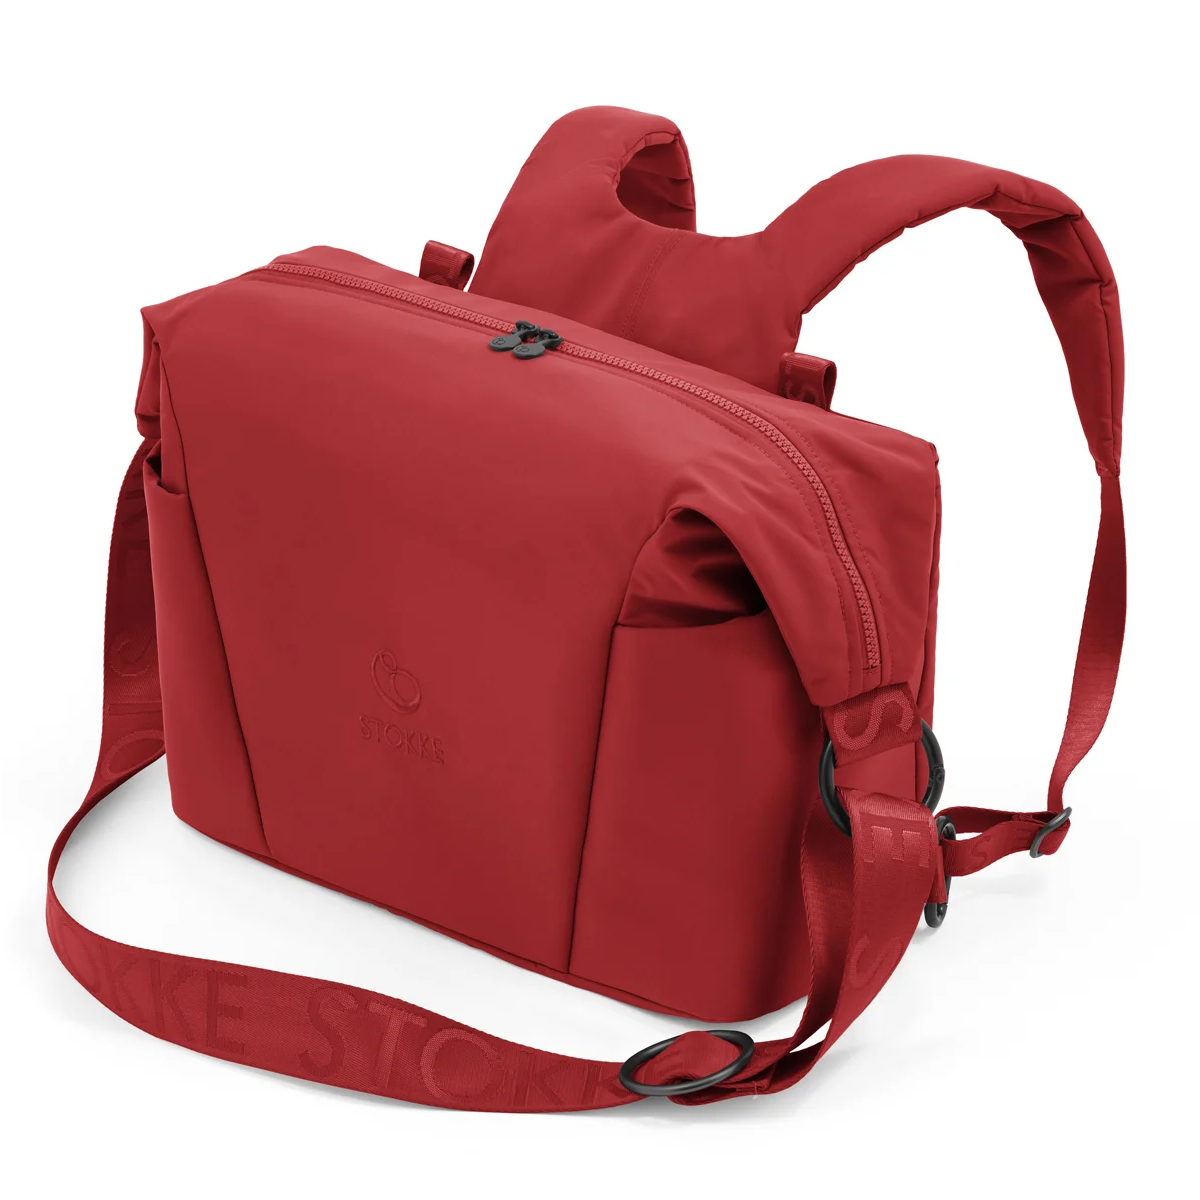 Сумка-рюкзак Stokke Xplory X Ruby Red (575104) - фото 3